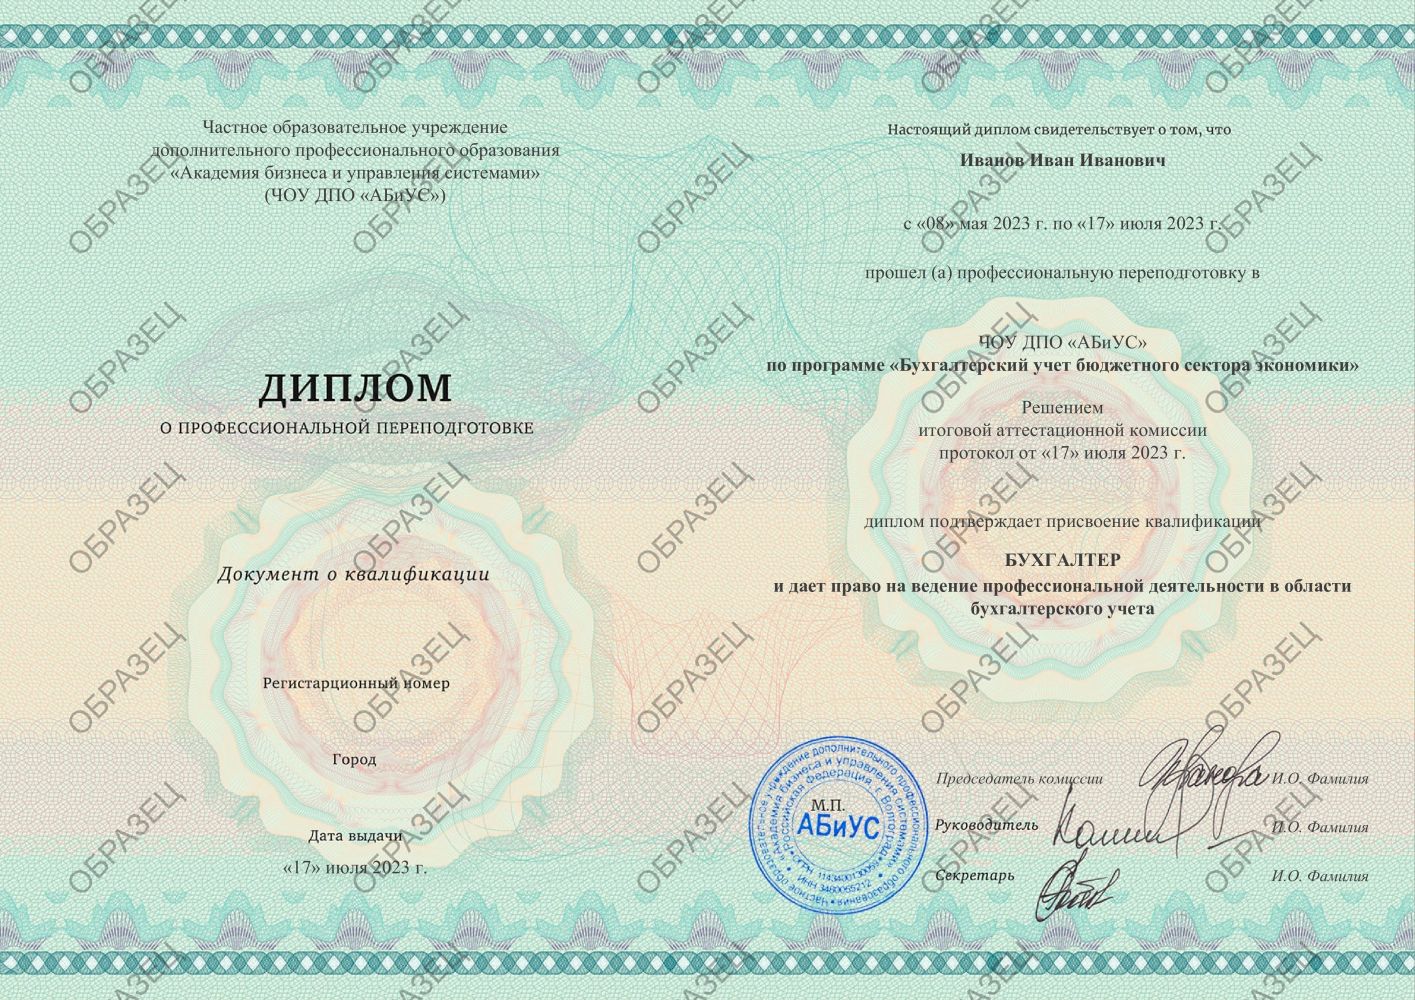 Диплом Бухгалтерский учет бюджетного сектора экономики 260 часов 13250 руб.